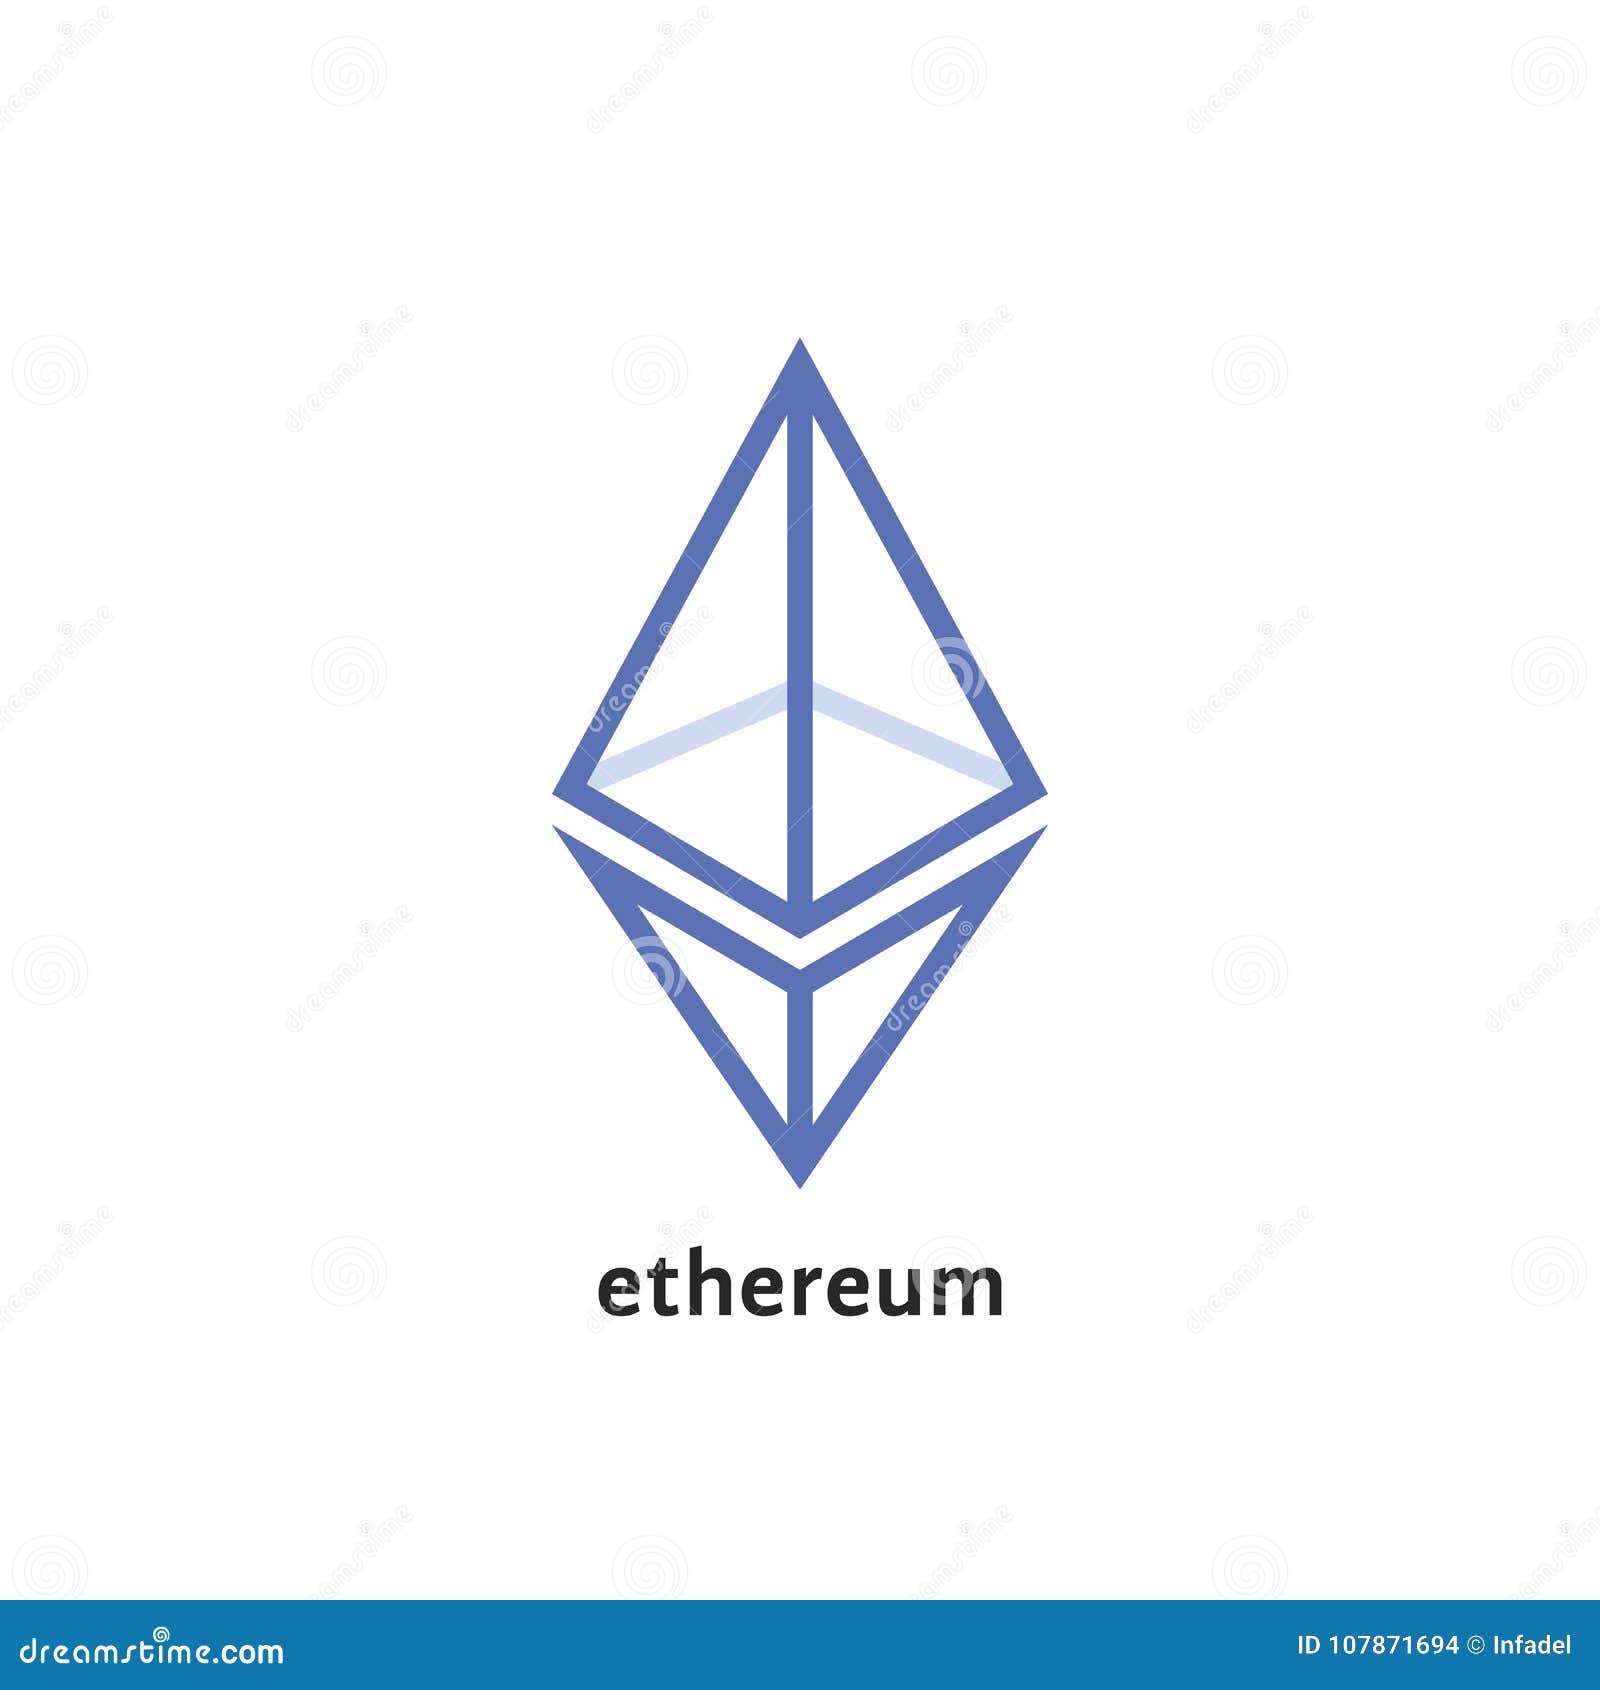 Ethereum Price (ETH)